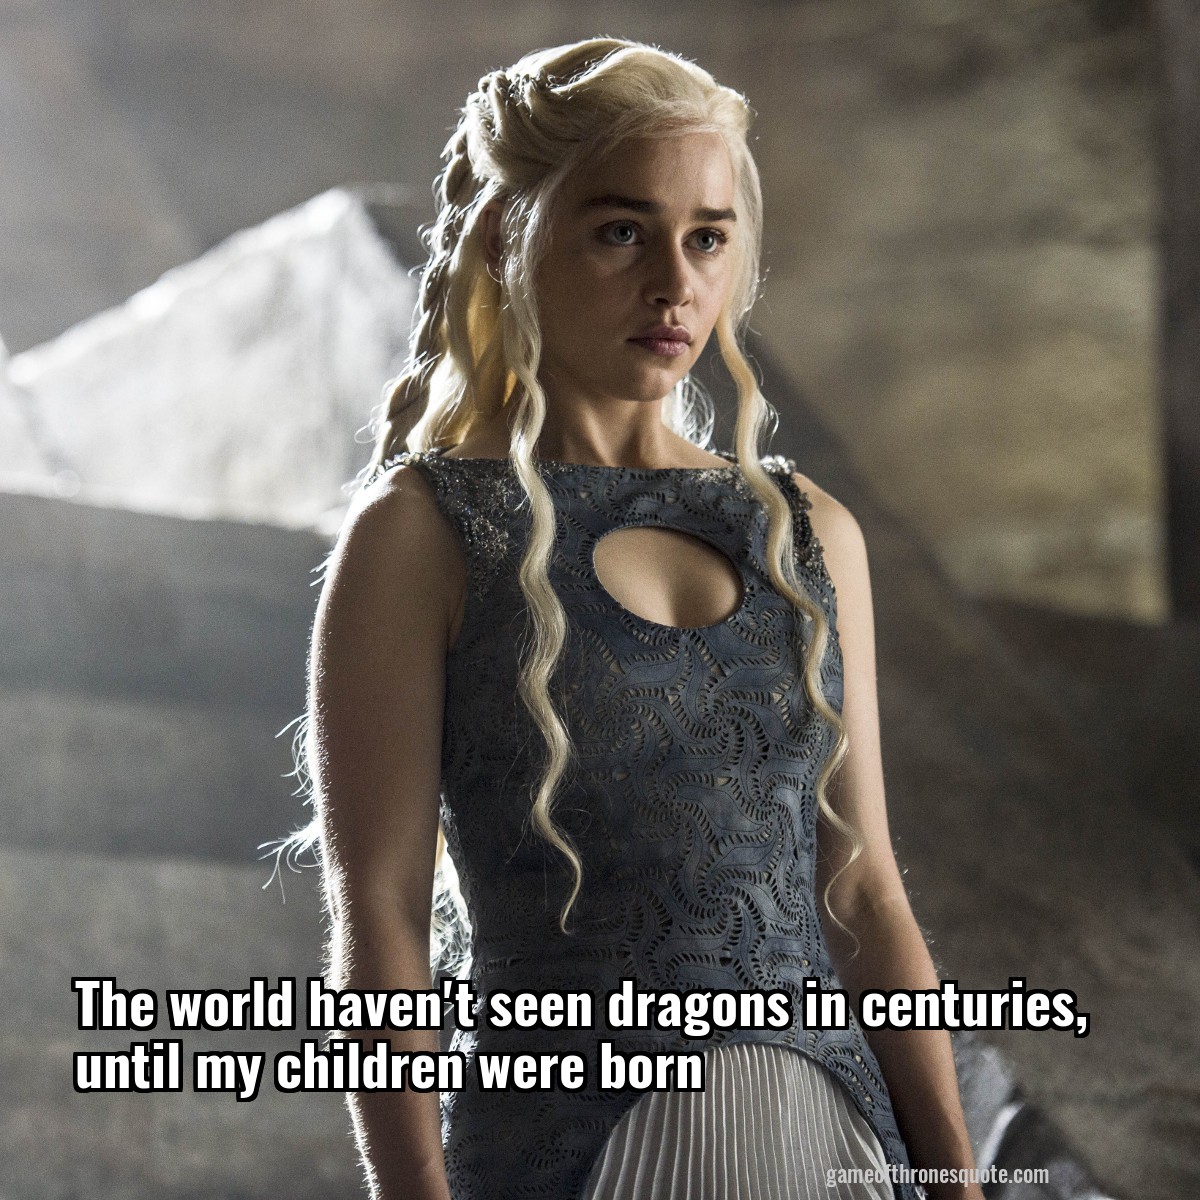 The world haven't seen dragons in centuries, until my children were born